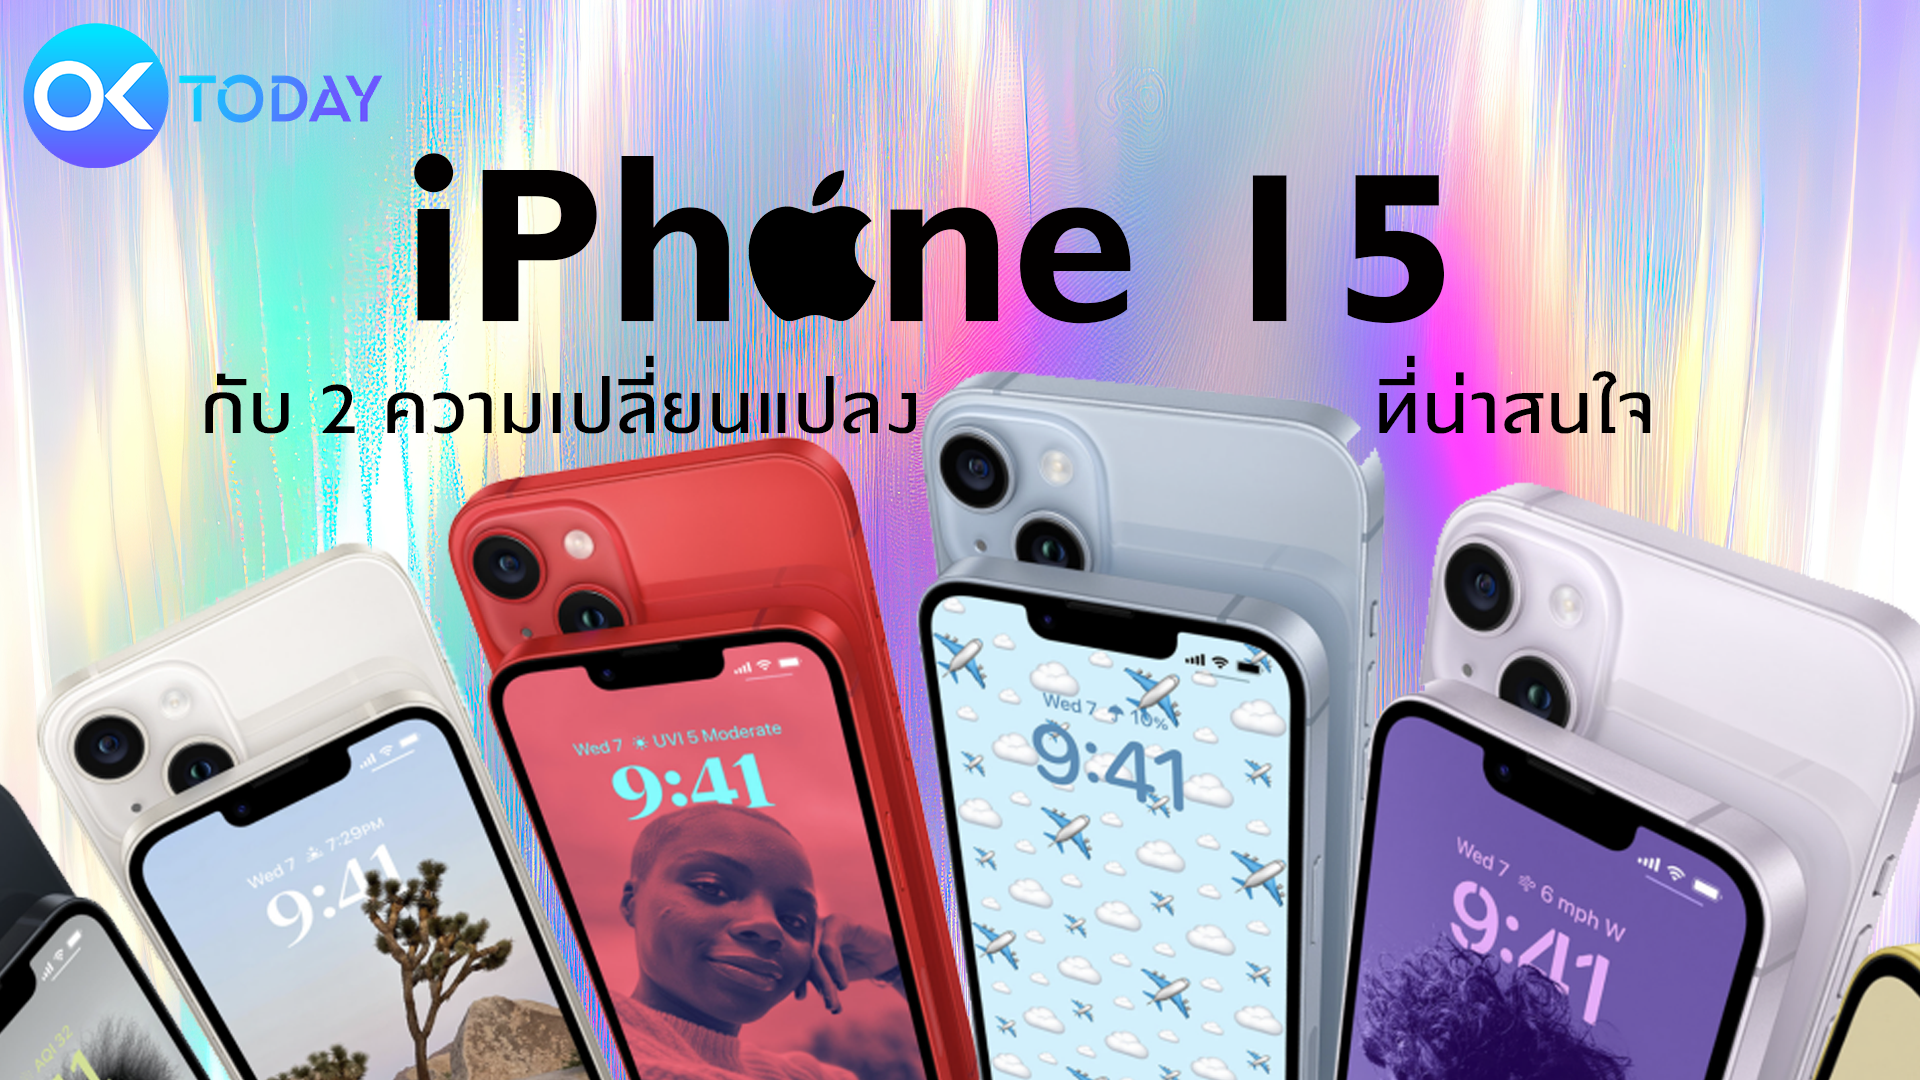 iPhone 15 กับ 2 ความเปลี่ยนแปลงที่น่าสนใจ